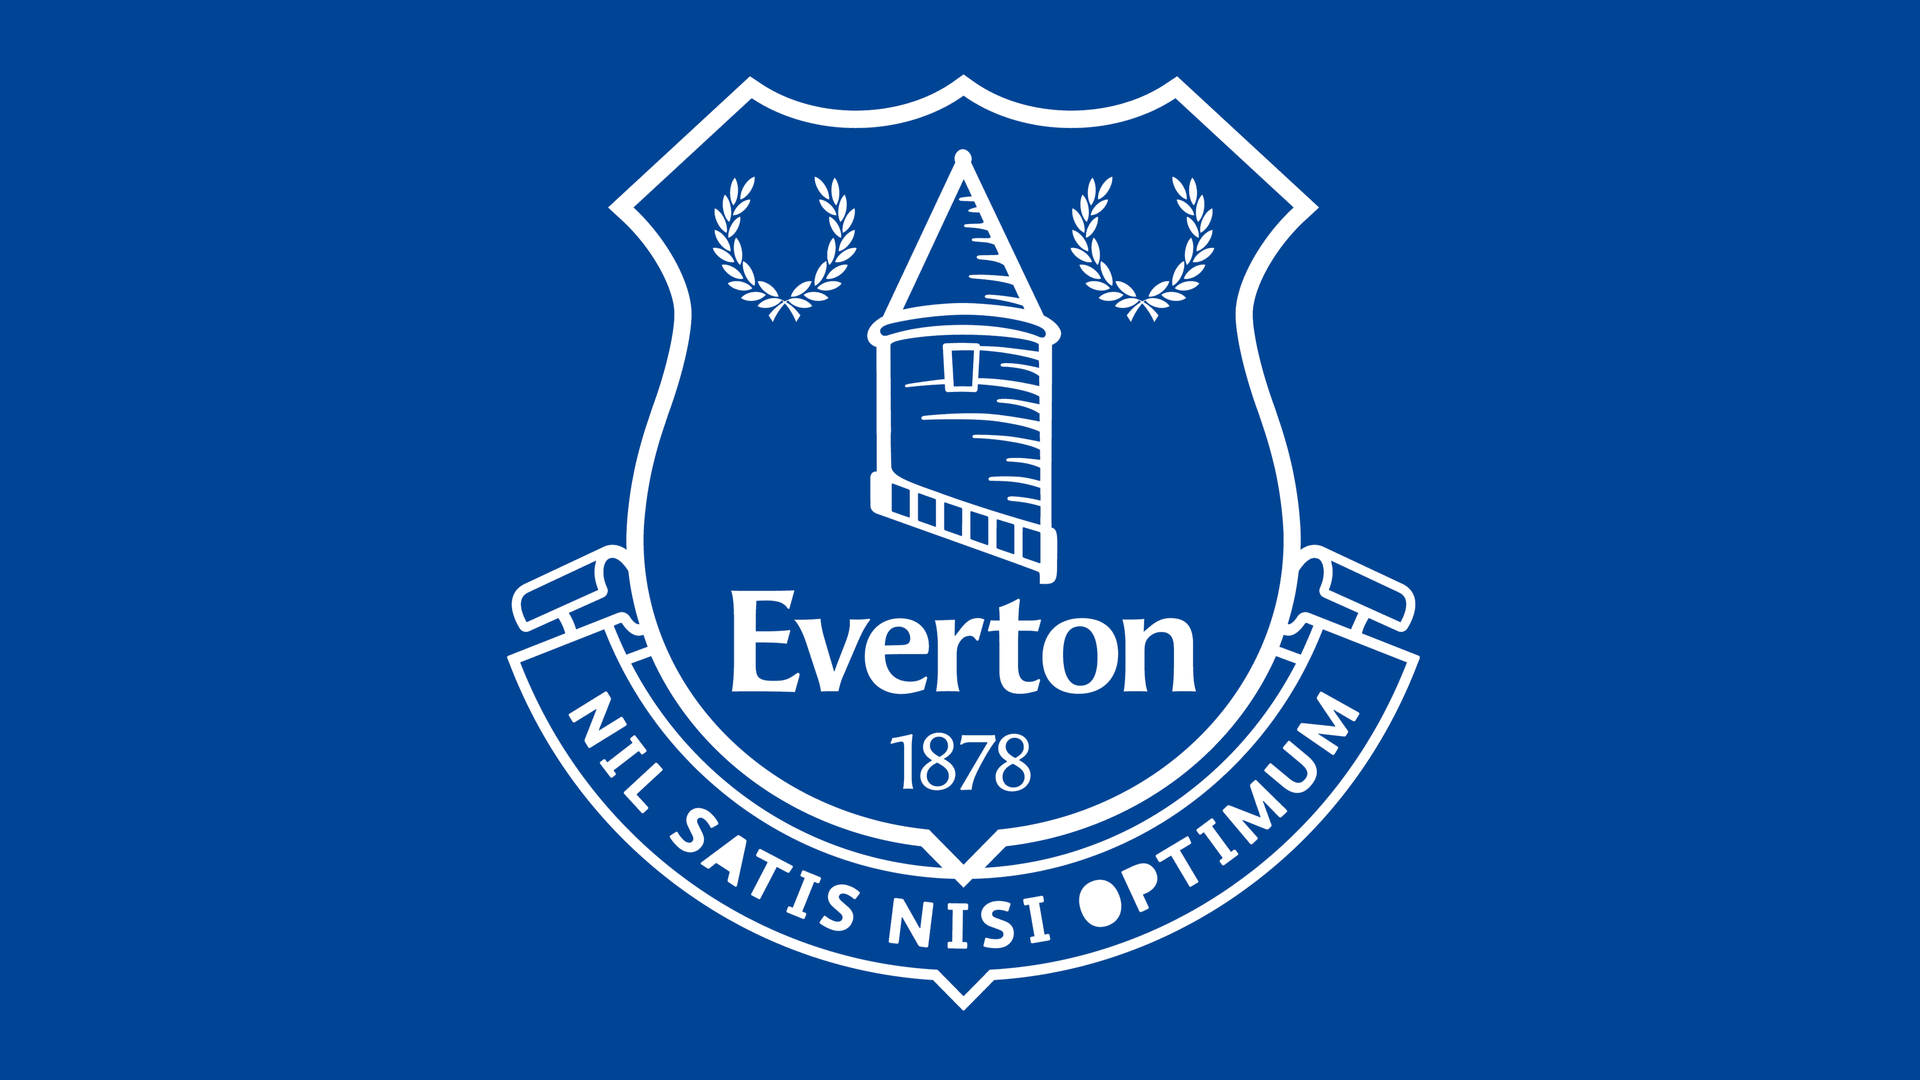 Everton F.c Emblem In Blue Background